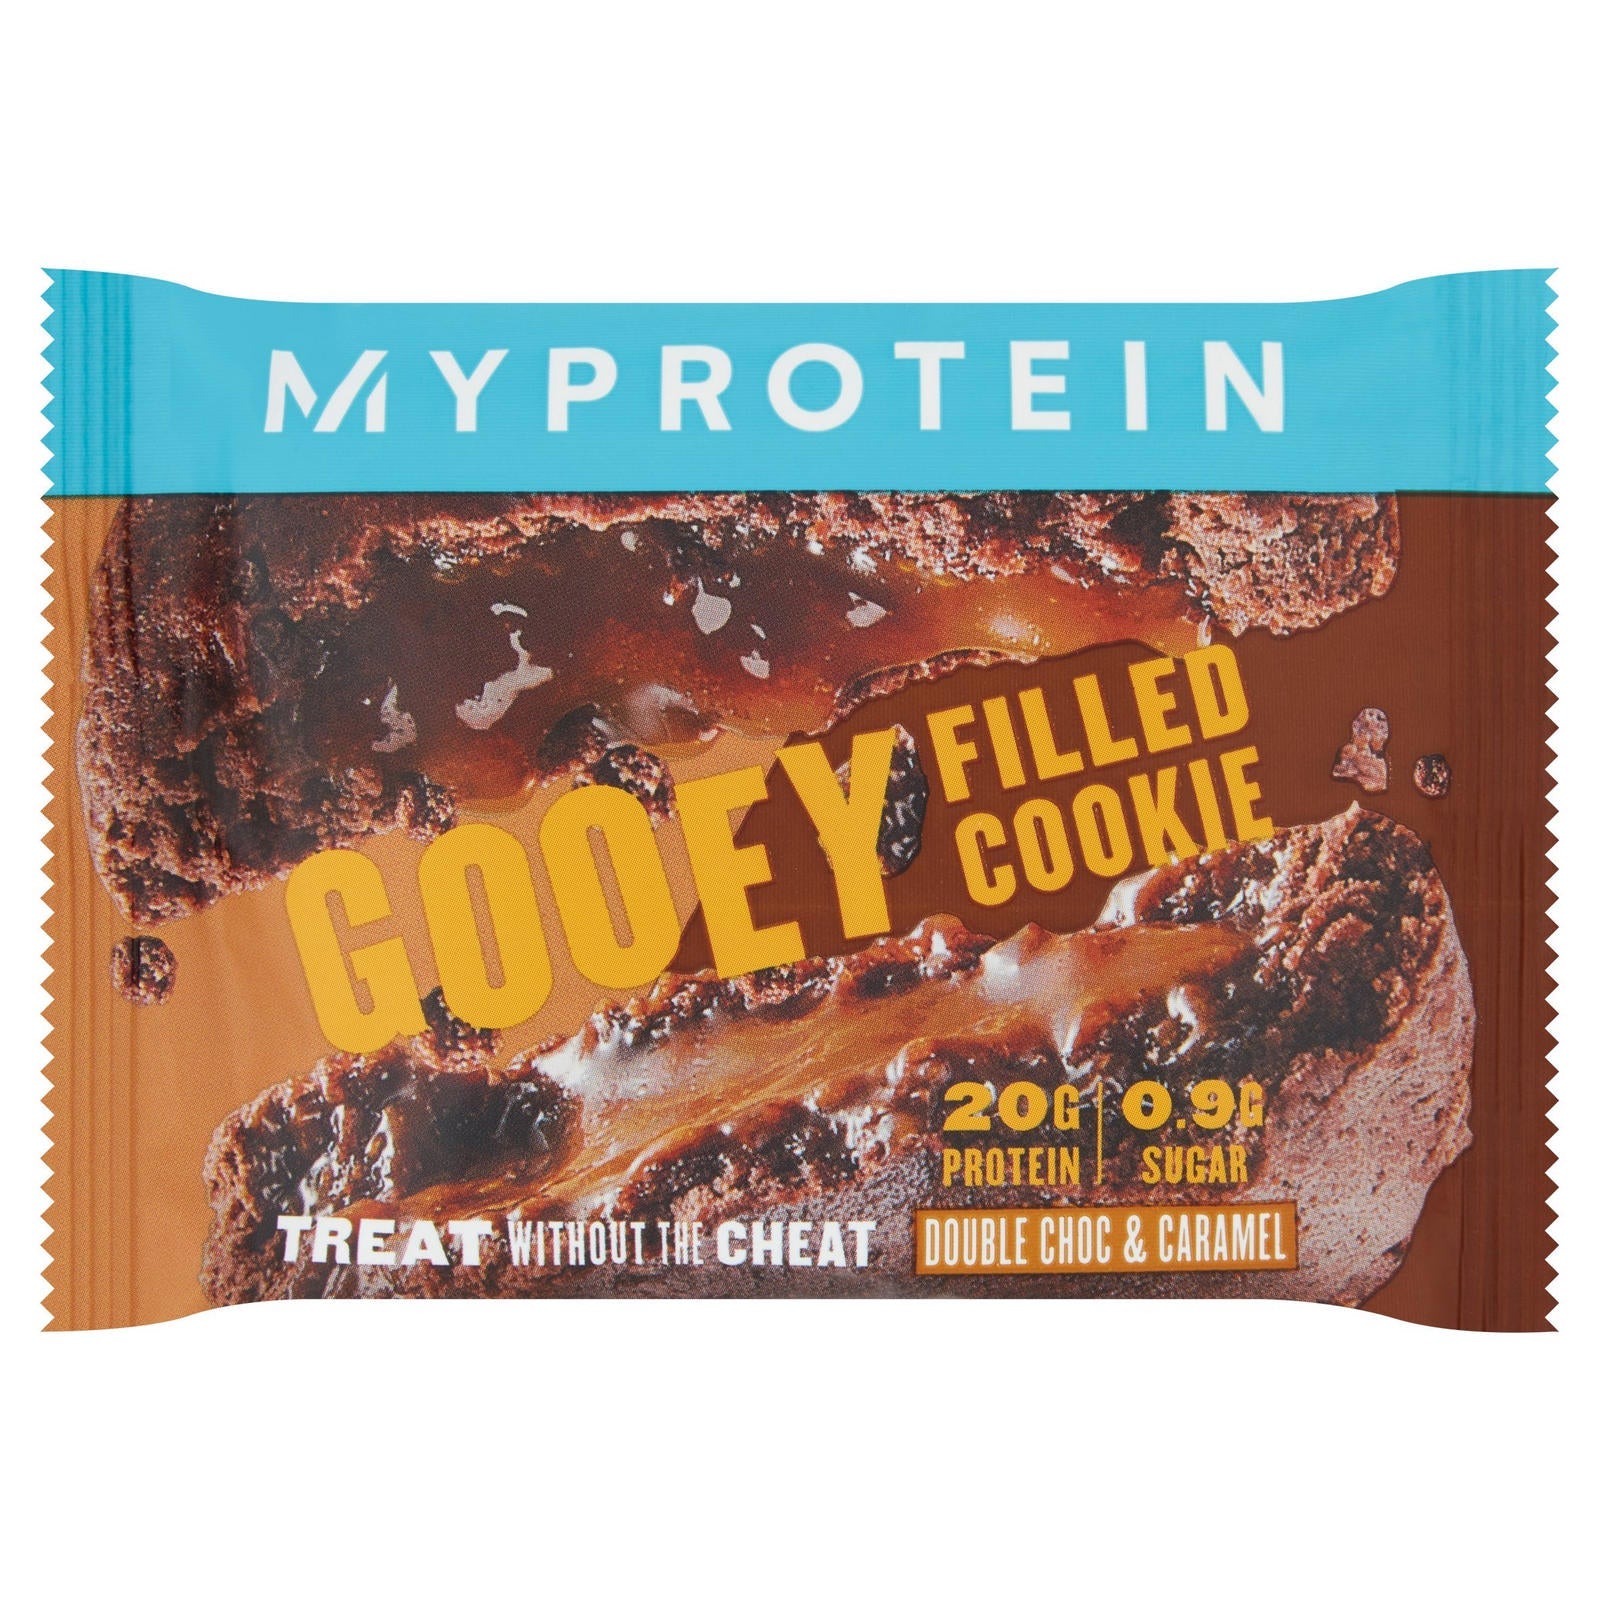 Myprotein Gooey Cookie, Box of 12 - Nutristore